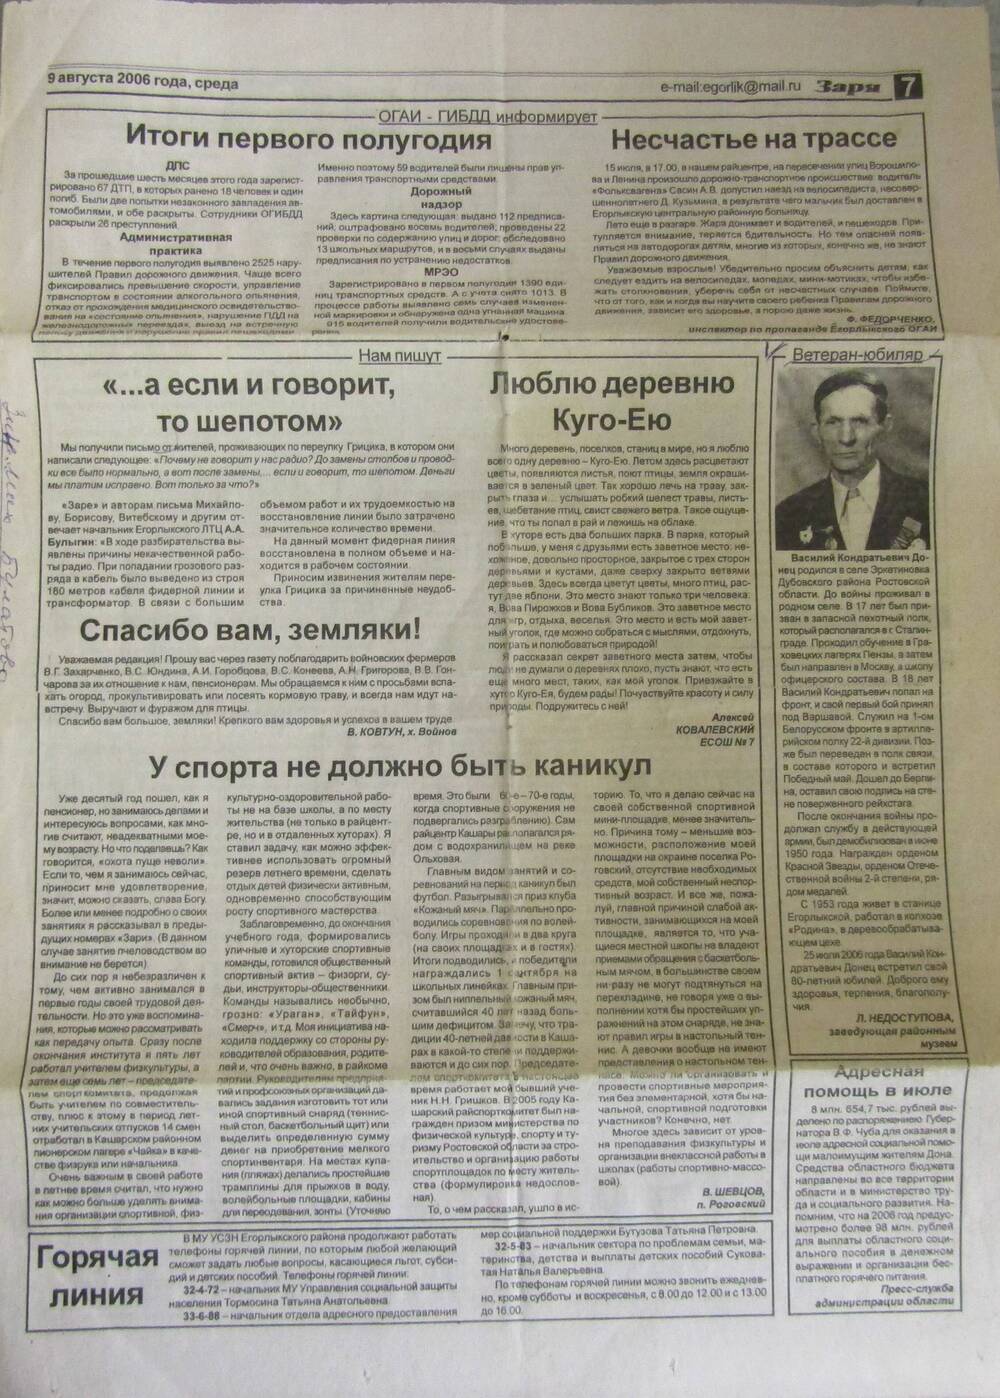 Ветеран-юбиляр. Газета Заря от 9 авг. 2006 г.